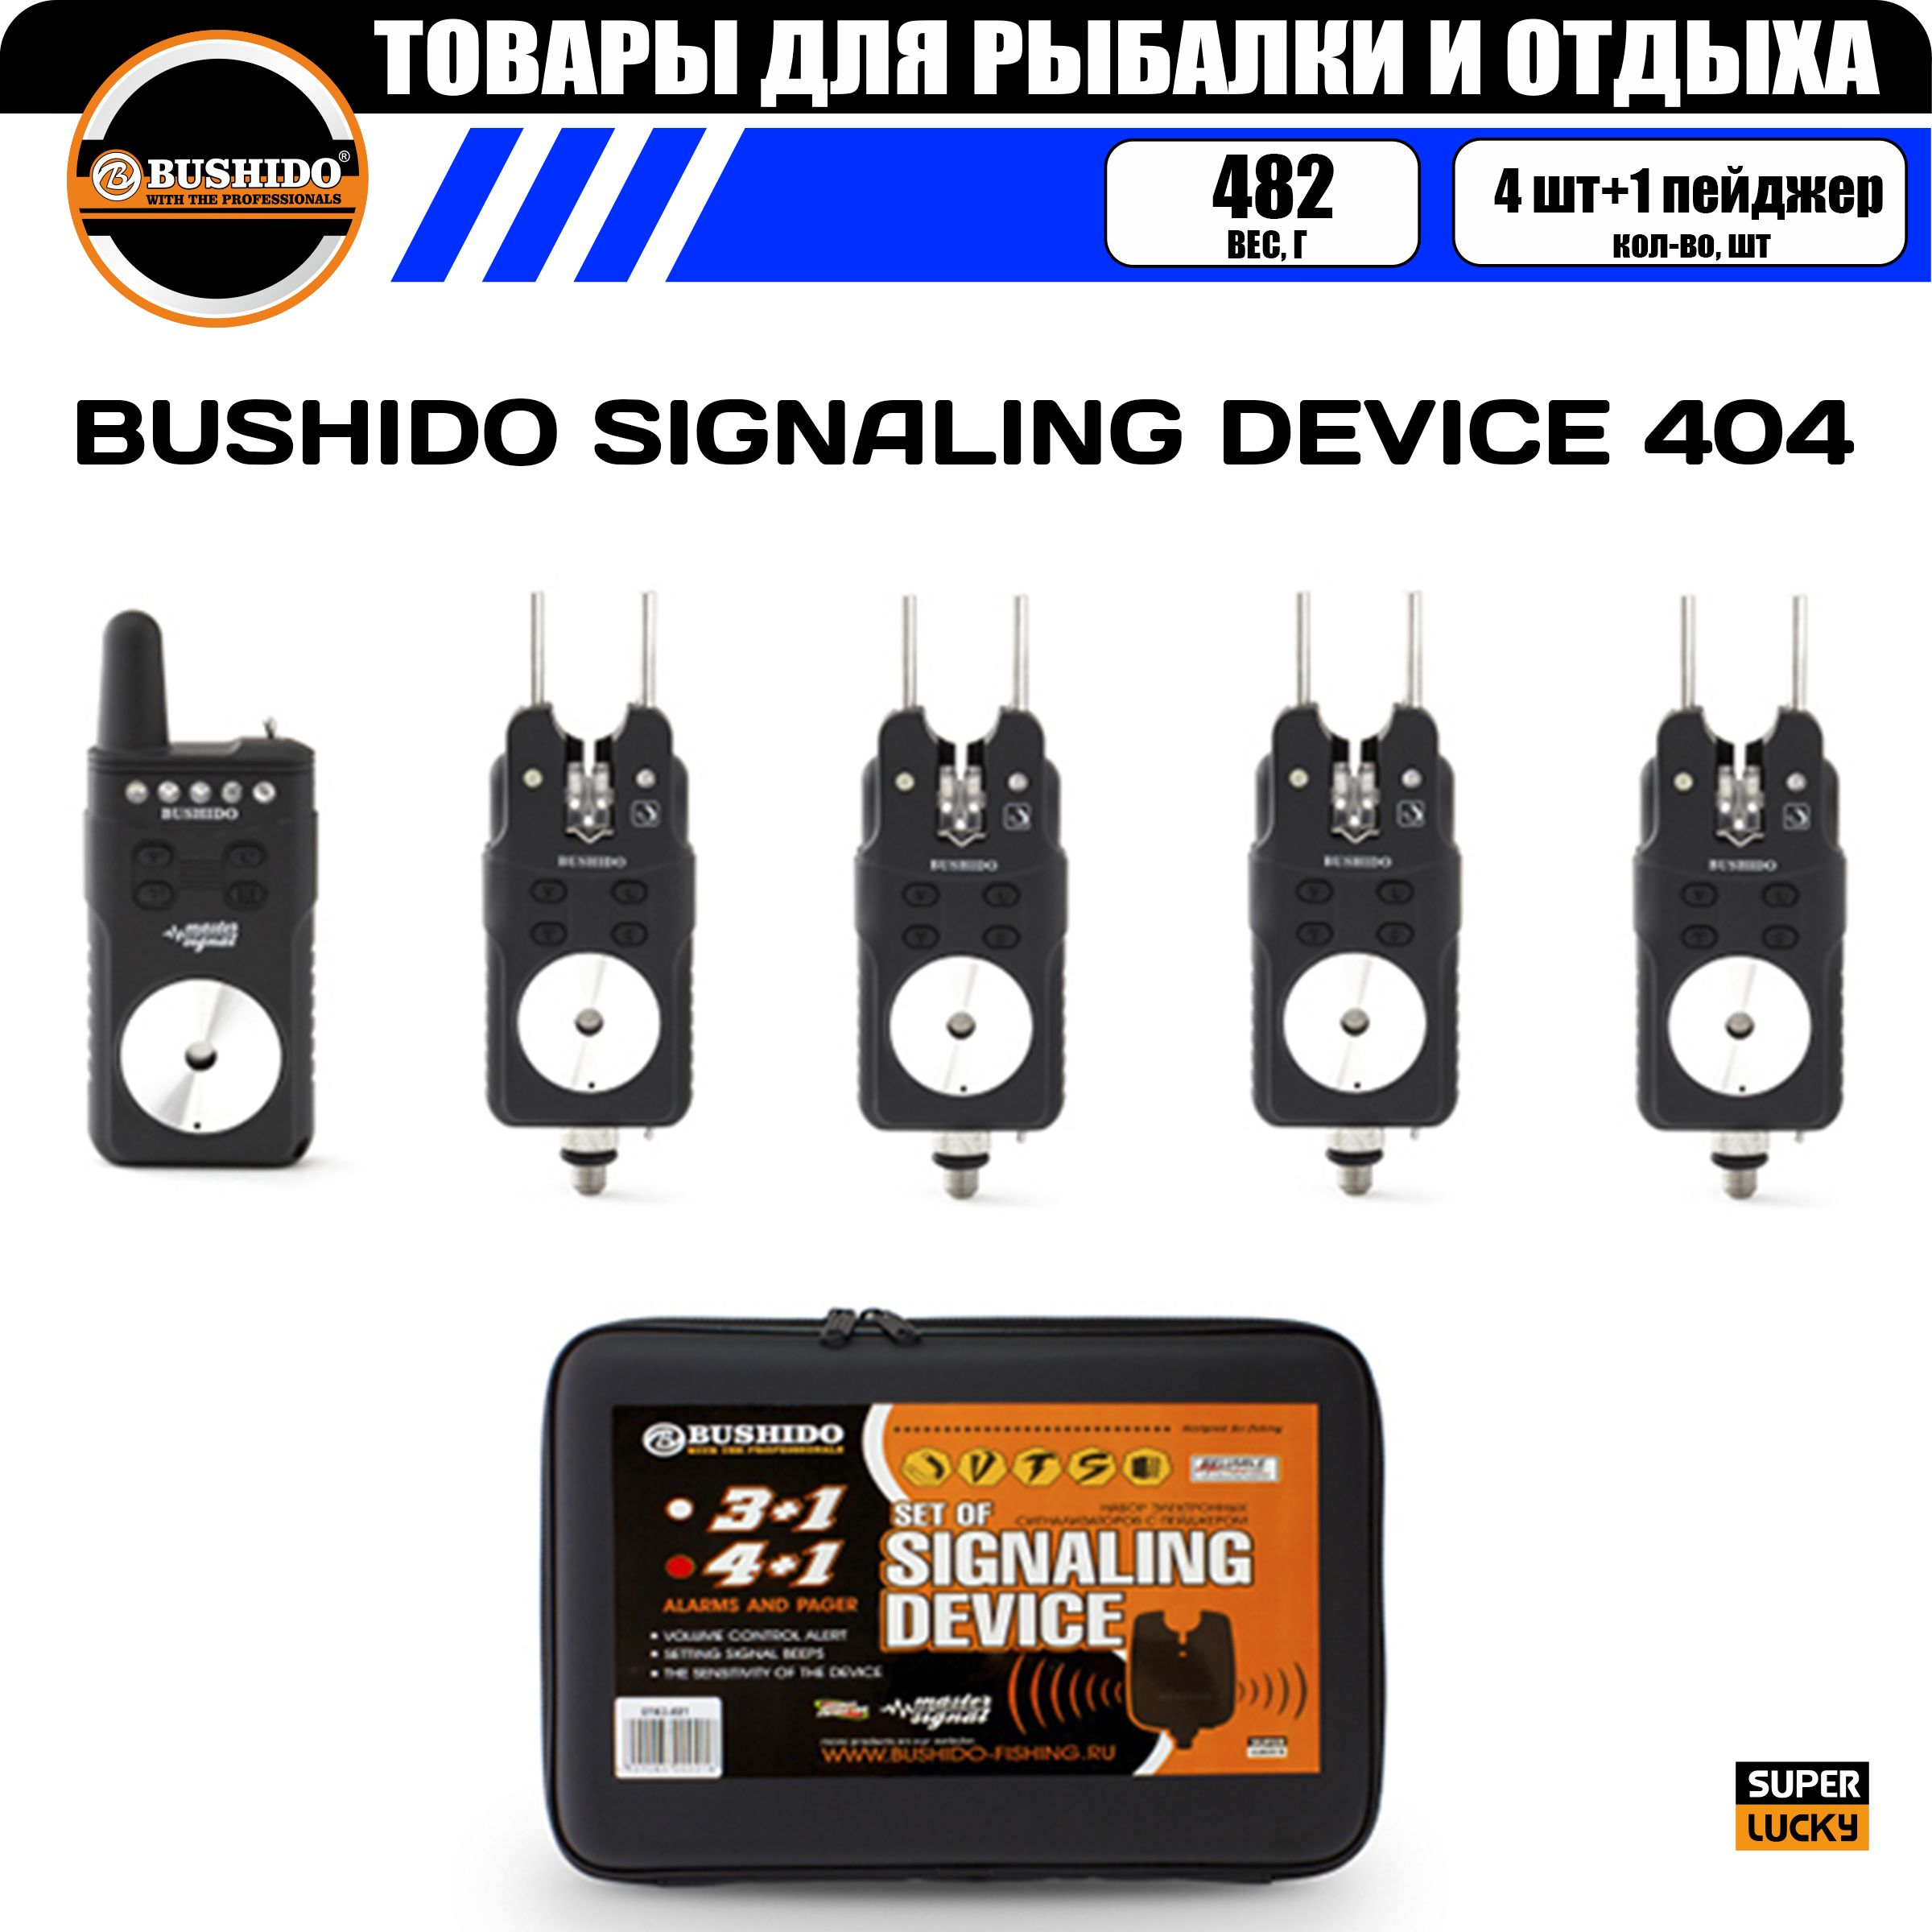 Набор сигнализаторов поклёвки BUSHIDO SIGNALING DEVICE 404 (4шт+1пейджер), для карповой